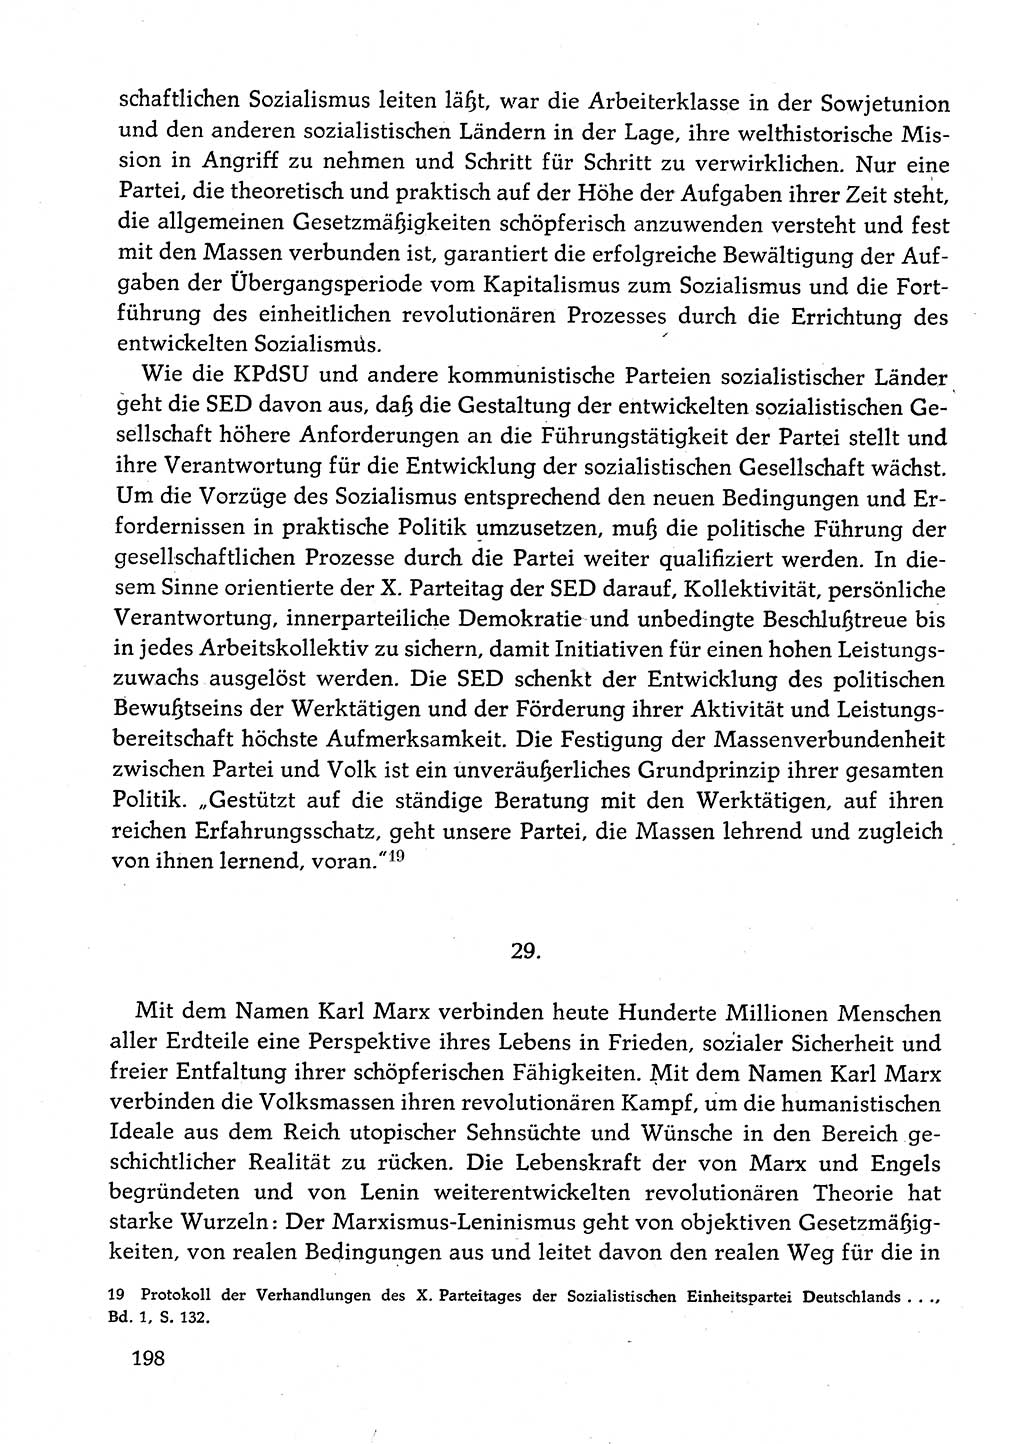 Dokumente der Sozialistischen Einheitspartei Deutschlands (SED) [Deutsche Demokratische Republik (DDR)] 1982-1983, Seite 198 (Dok. SED DDR 1982-1983, S. 198)